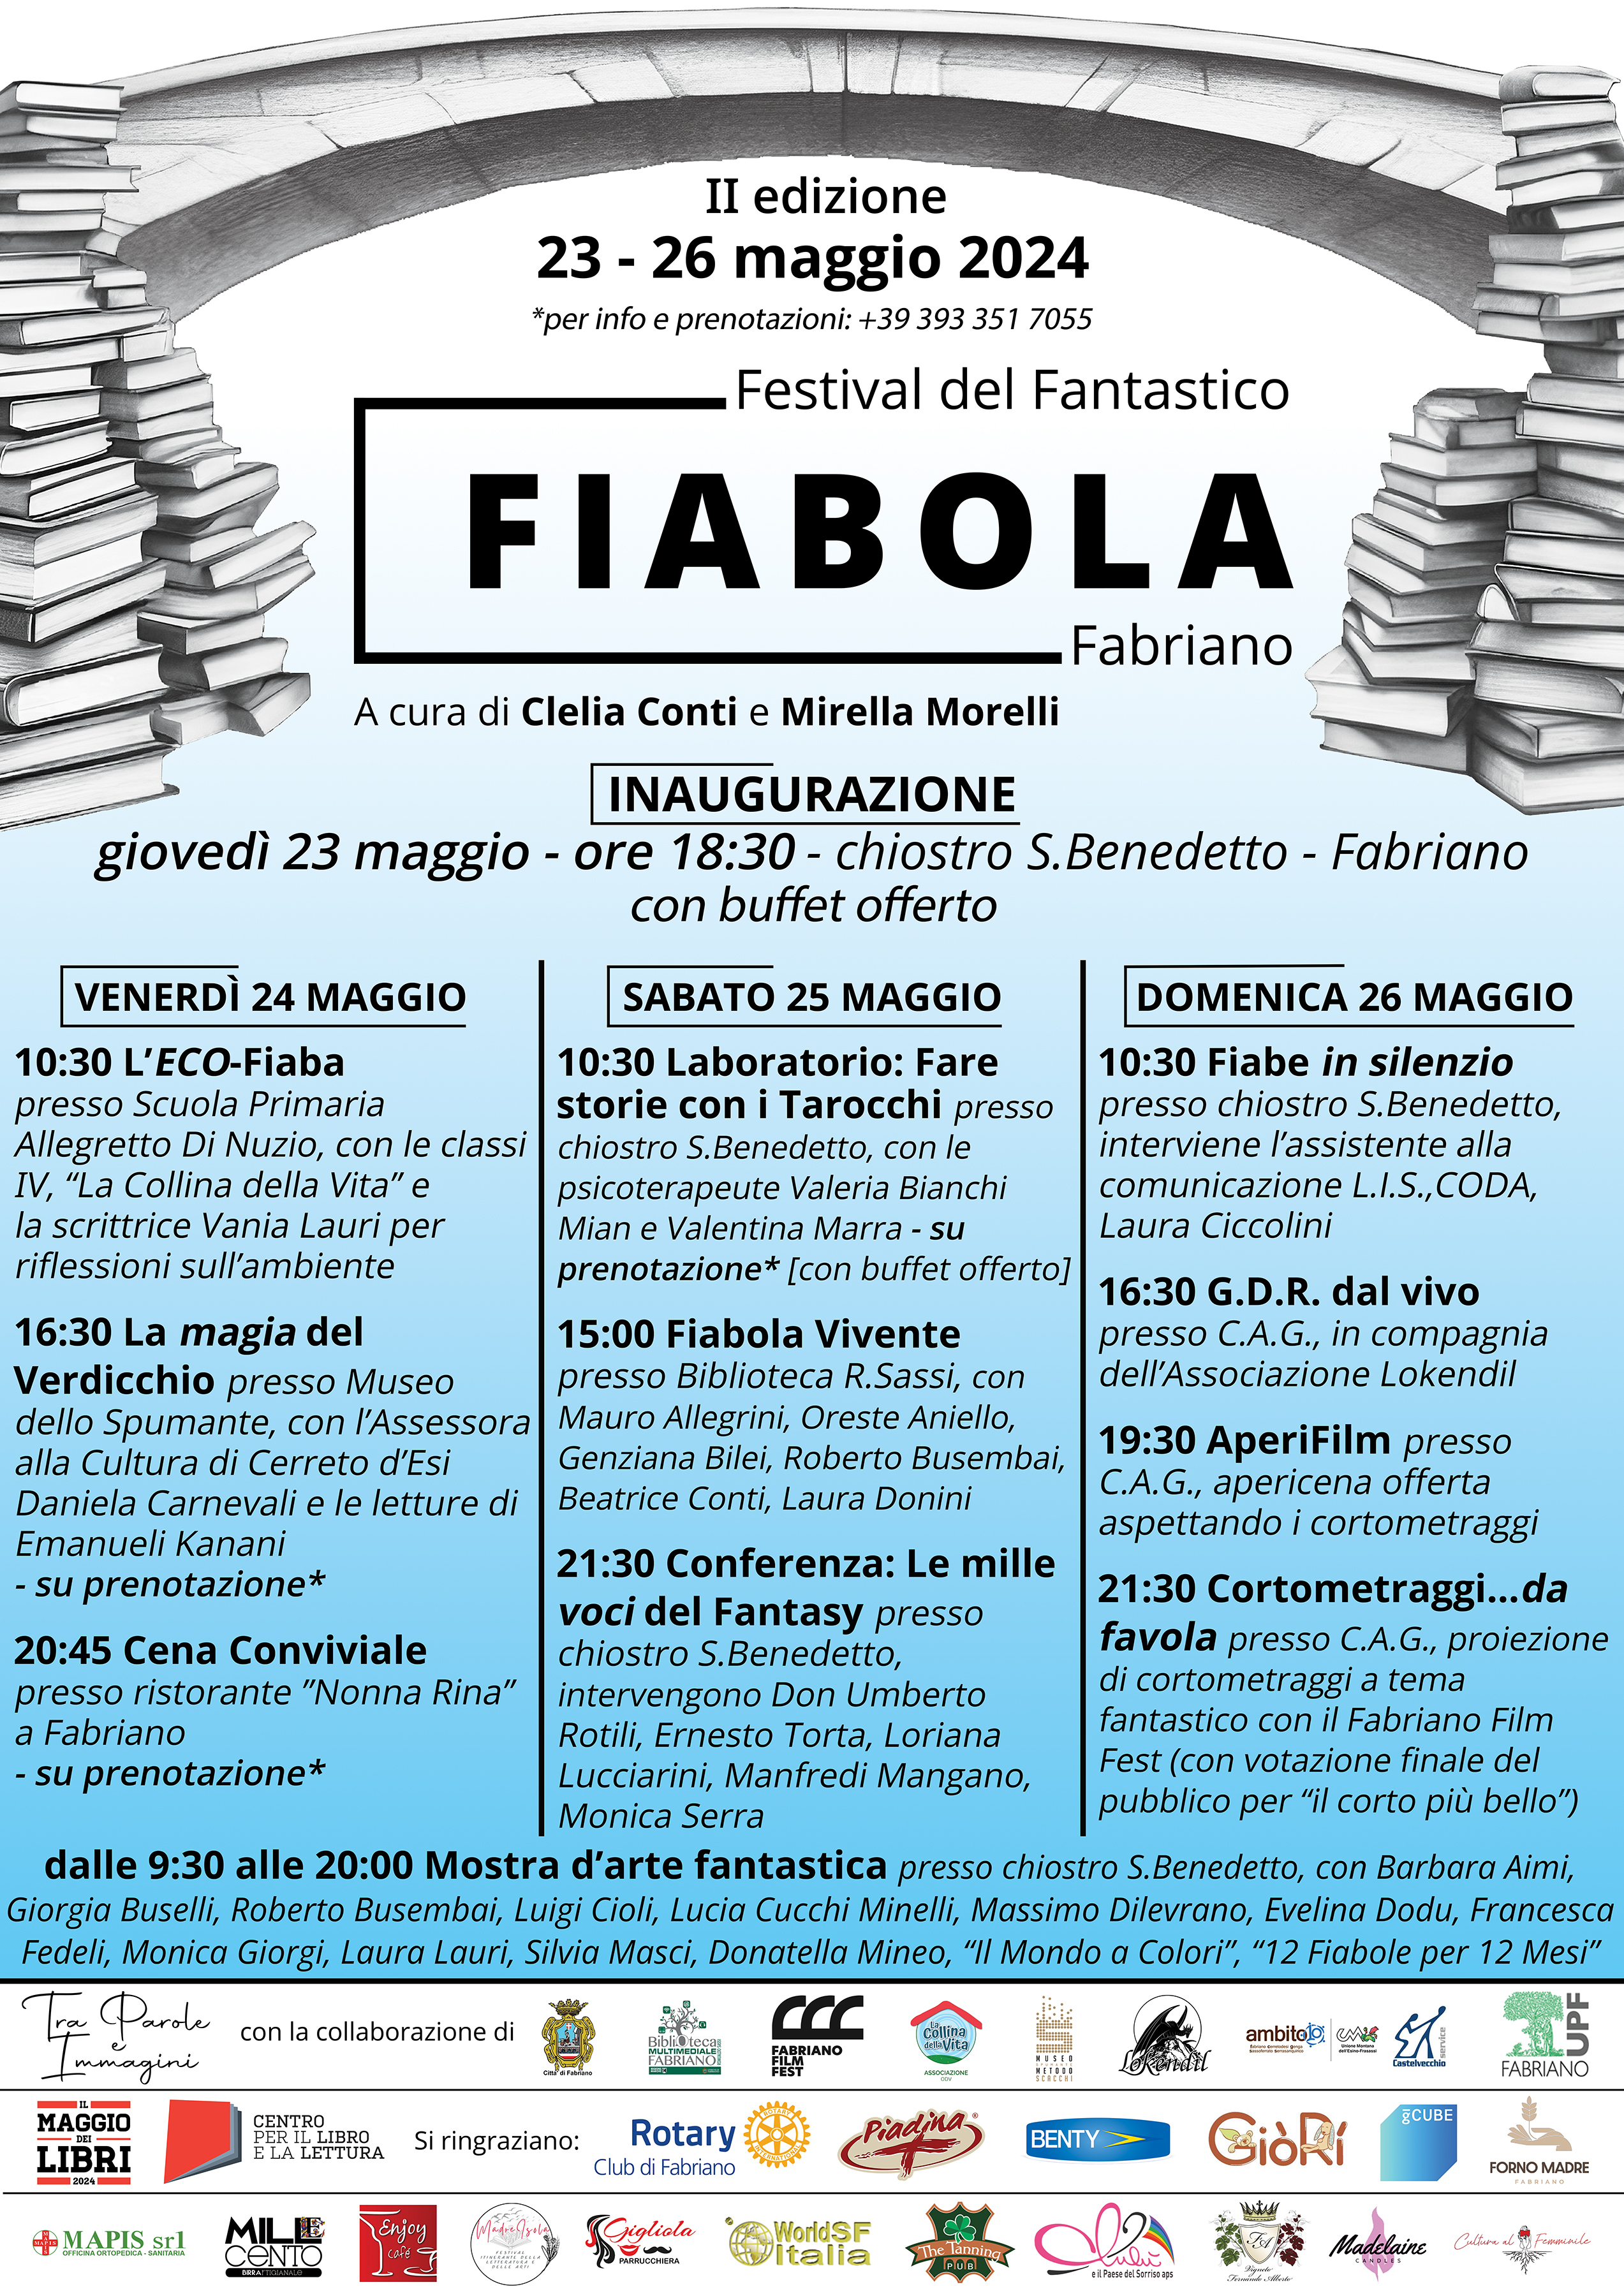 FIABOLA - Festival del Fantastico - 23/26 maggio 2024